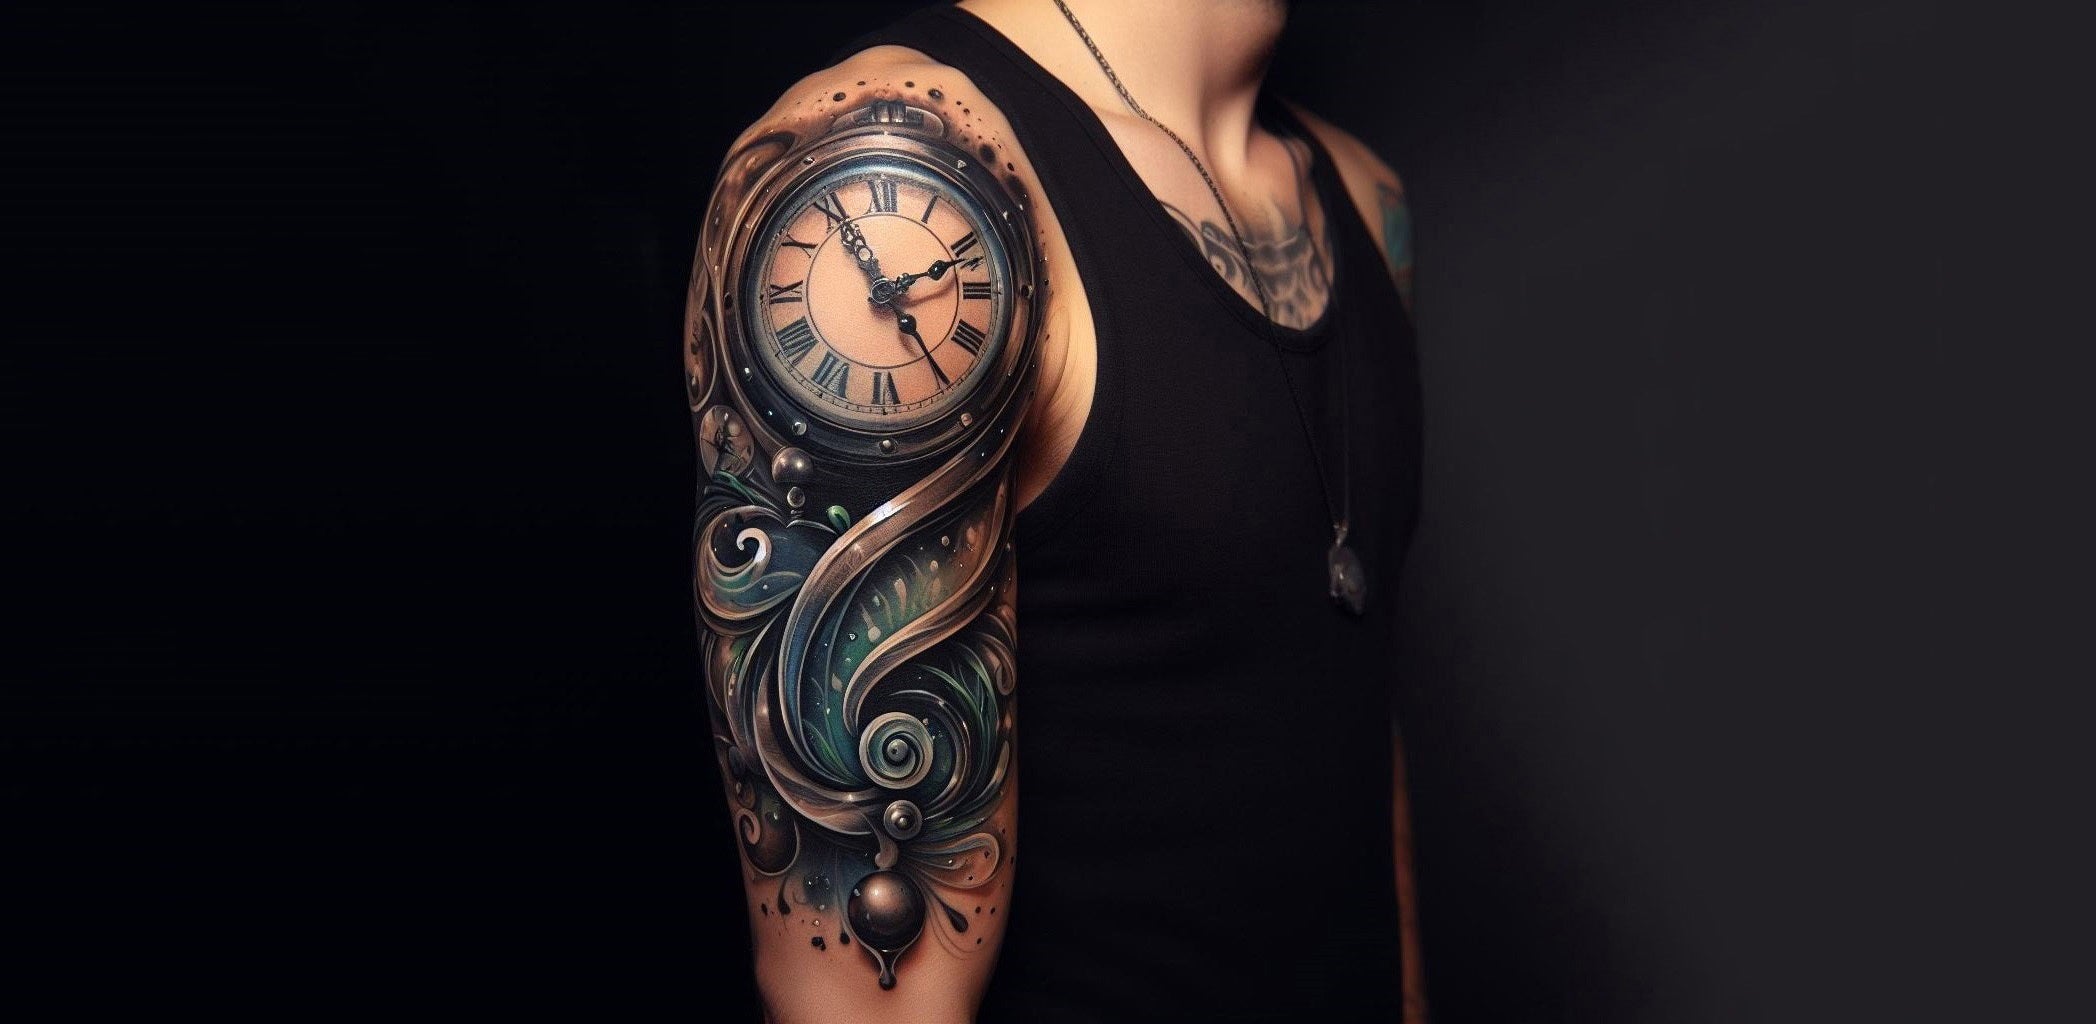 Three Clocks chest tattoo | Black and grey tattoos, Tattoos, Tattoo artists